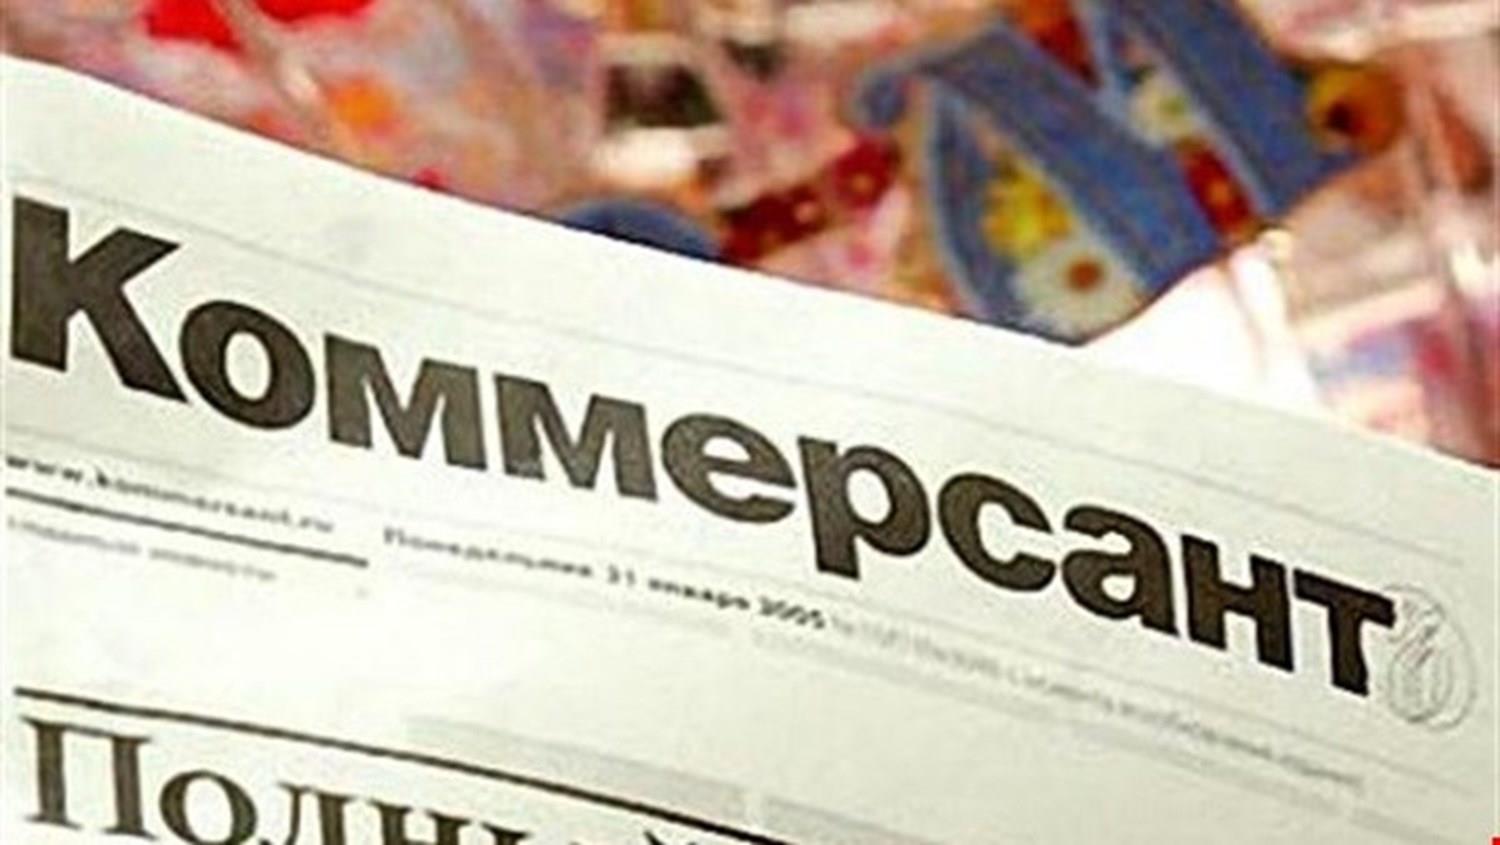 جريدة كومرسانت الروسية